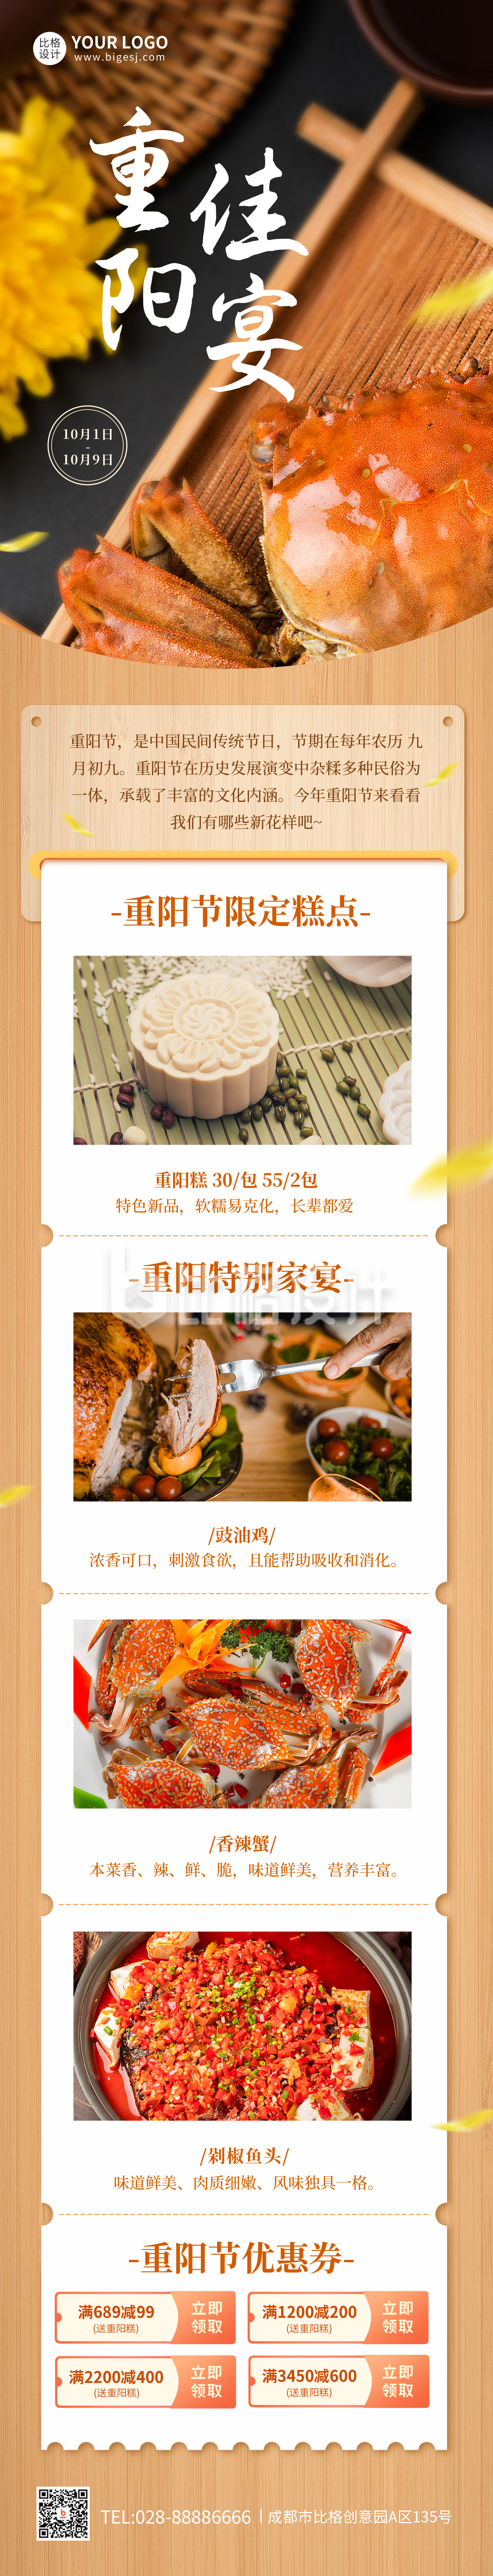 重阳节餐饮活动宣传长图海报